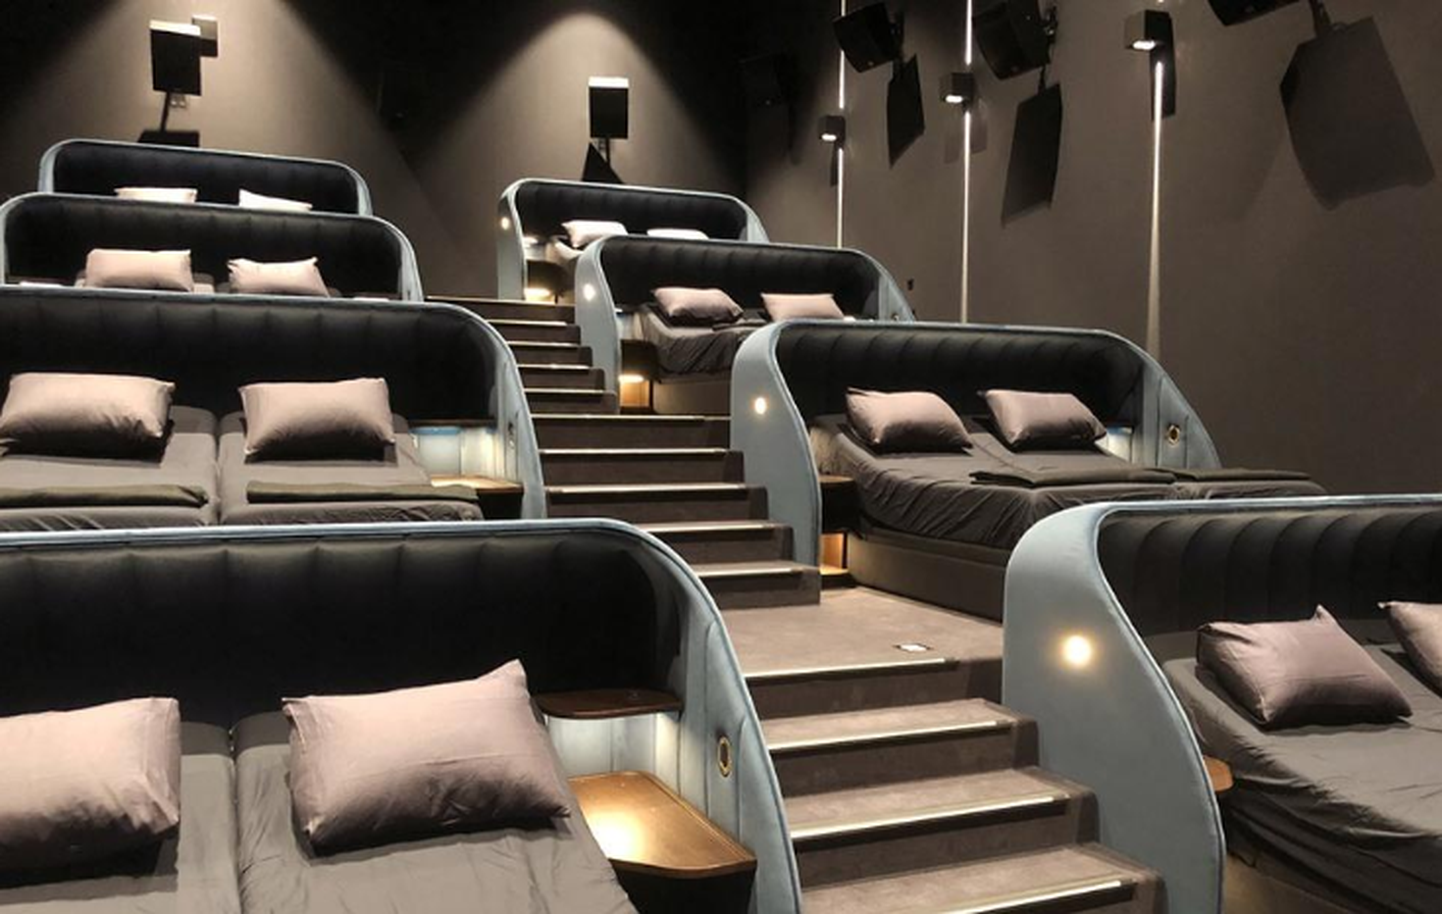 Kinozāle-guļamistaba "Pathe" kinoteātrī Šveicē